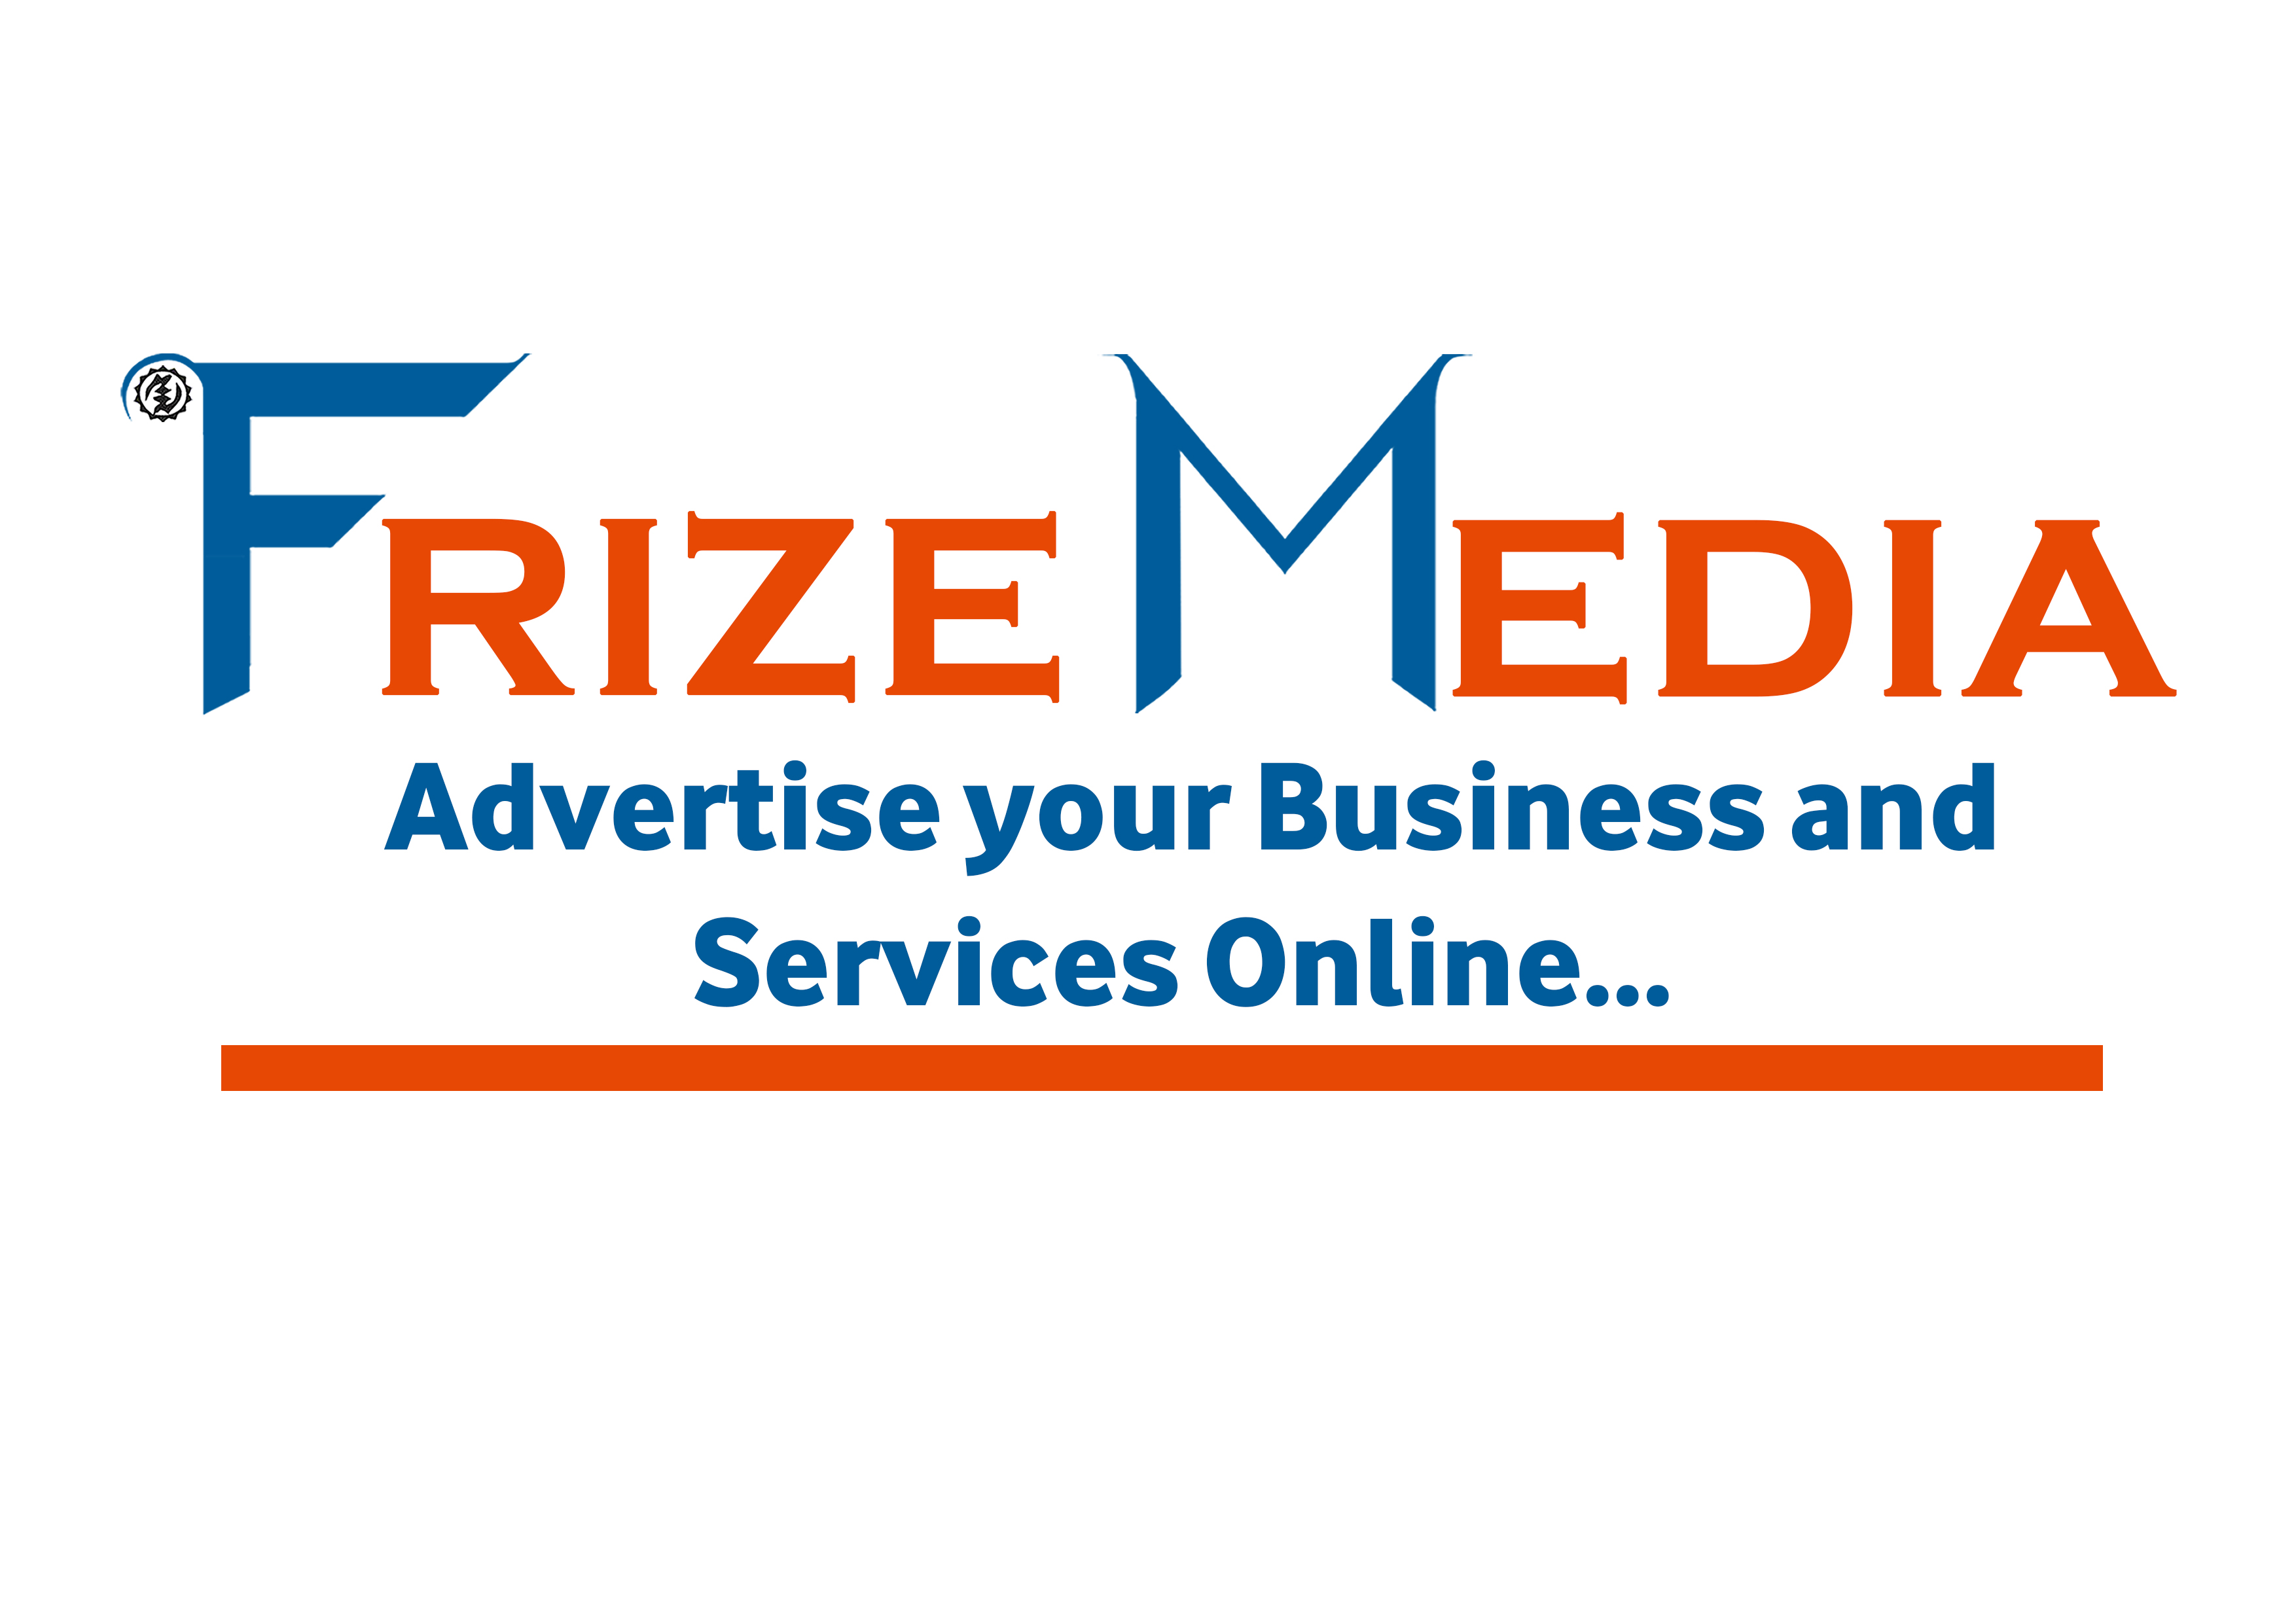 FrizeMedia Marketing